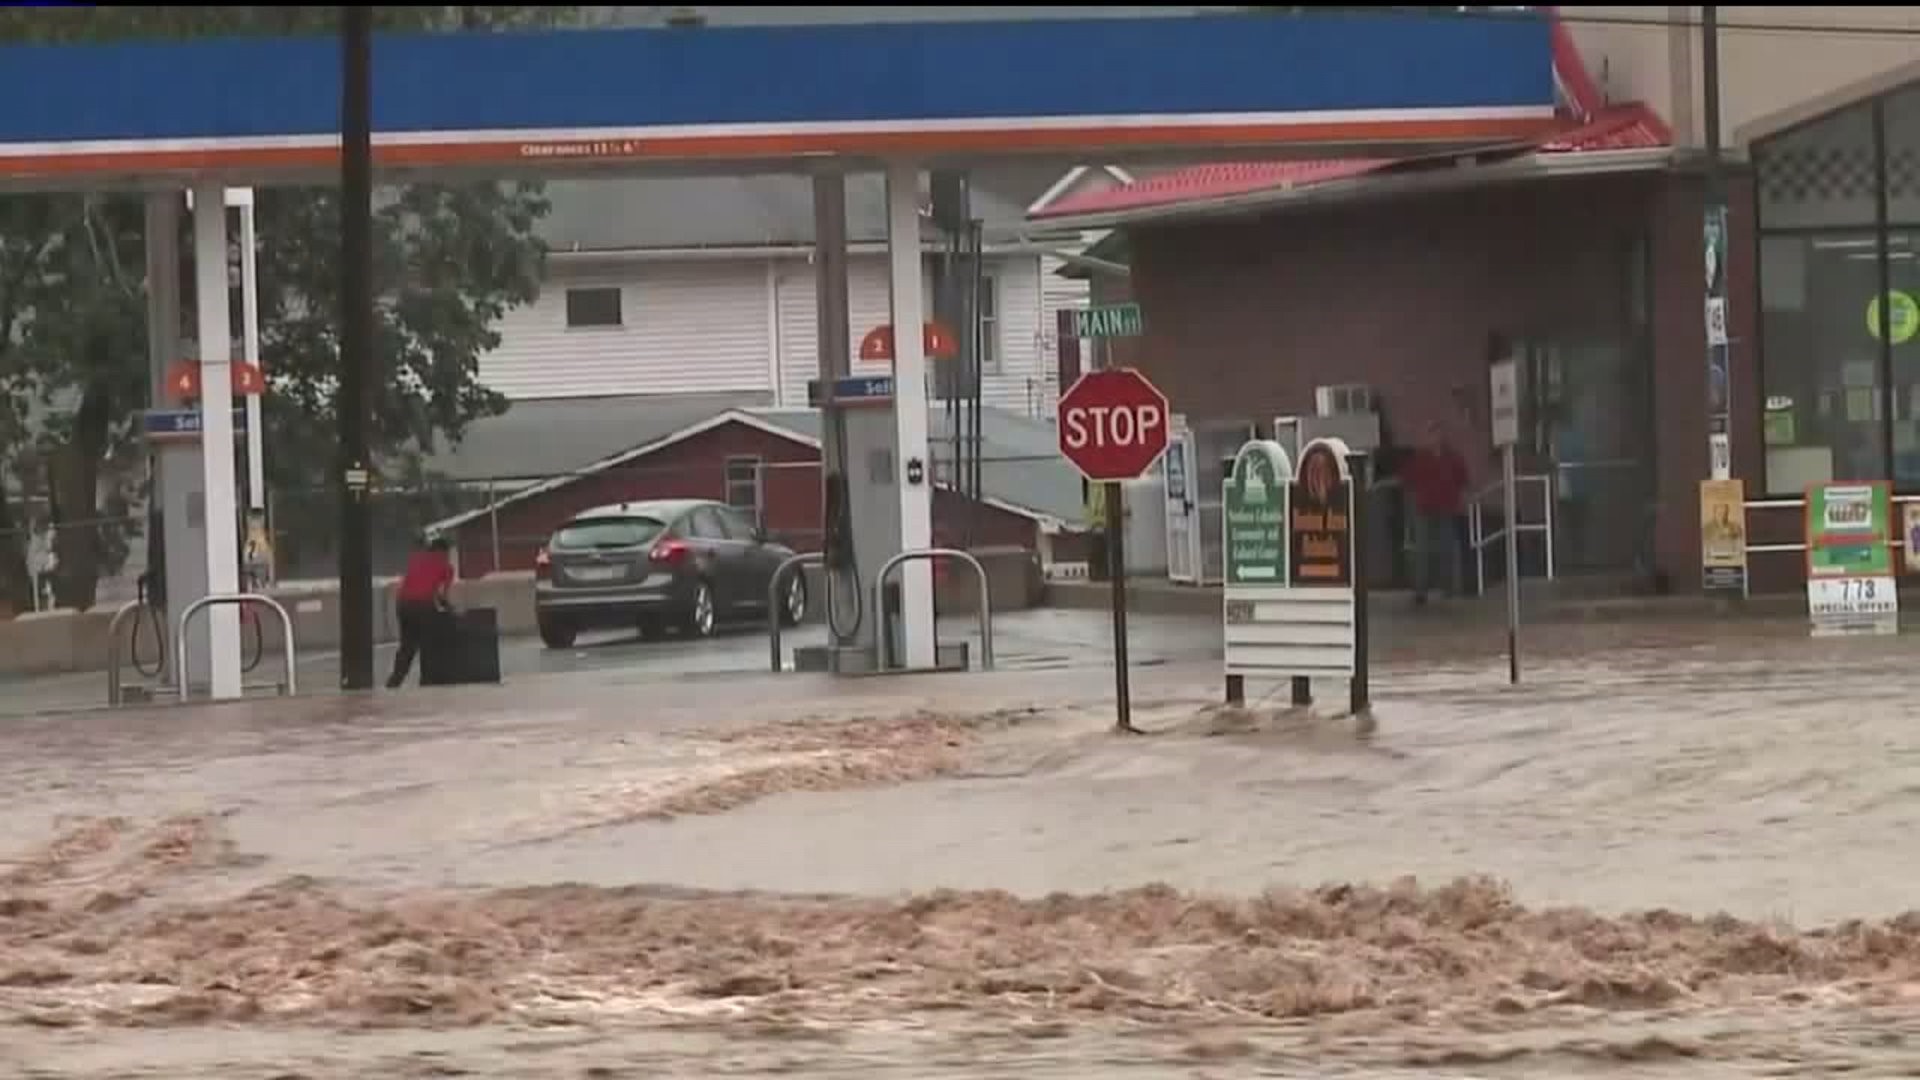 Flash Floods Rip through Benton as Fishing Creek Rises